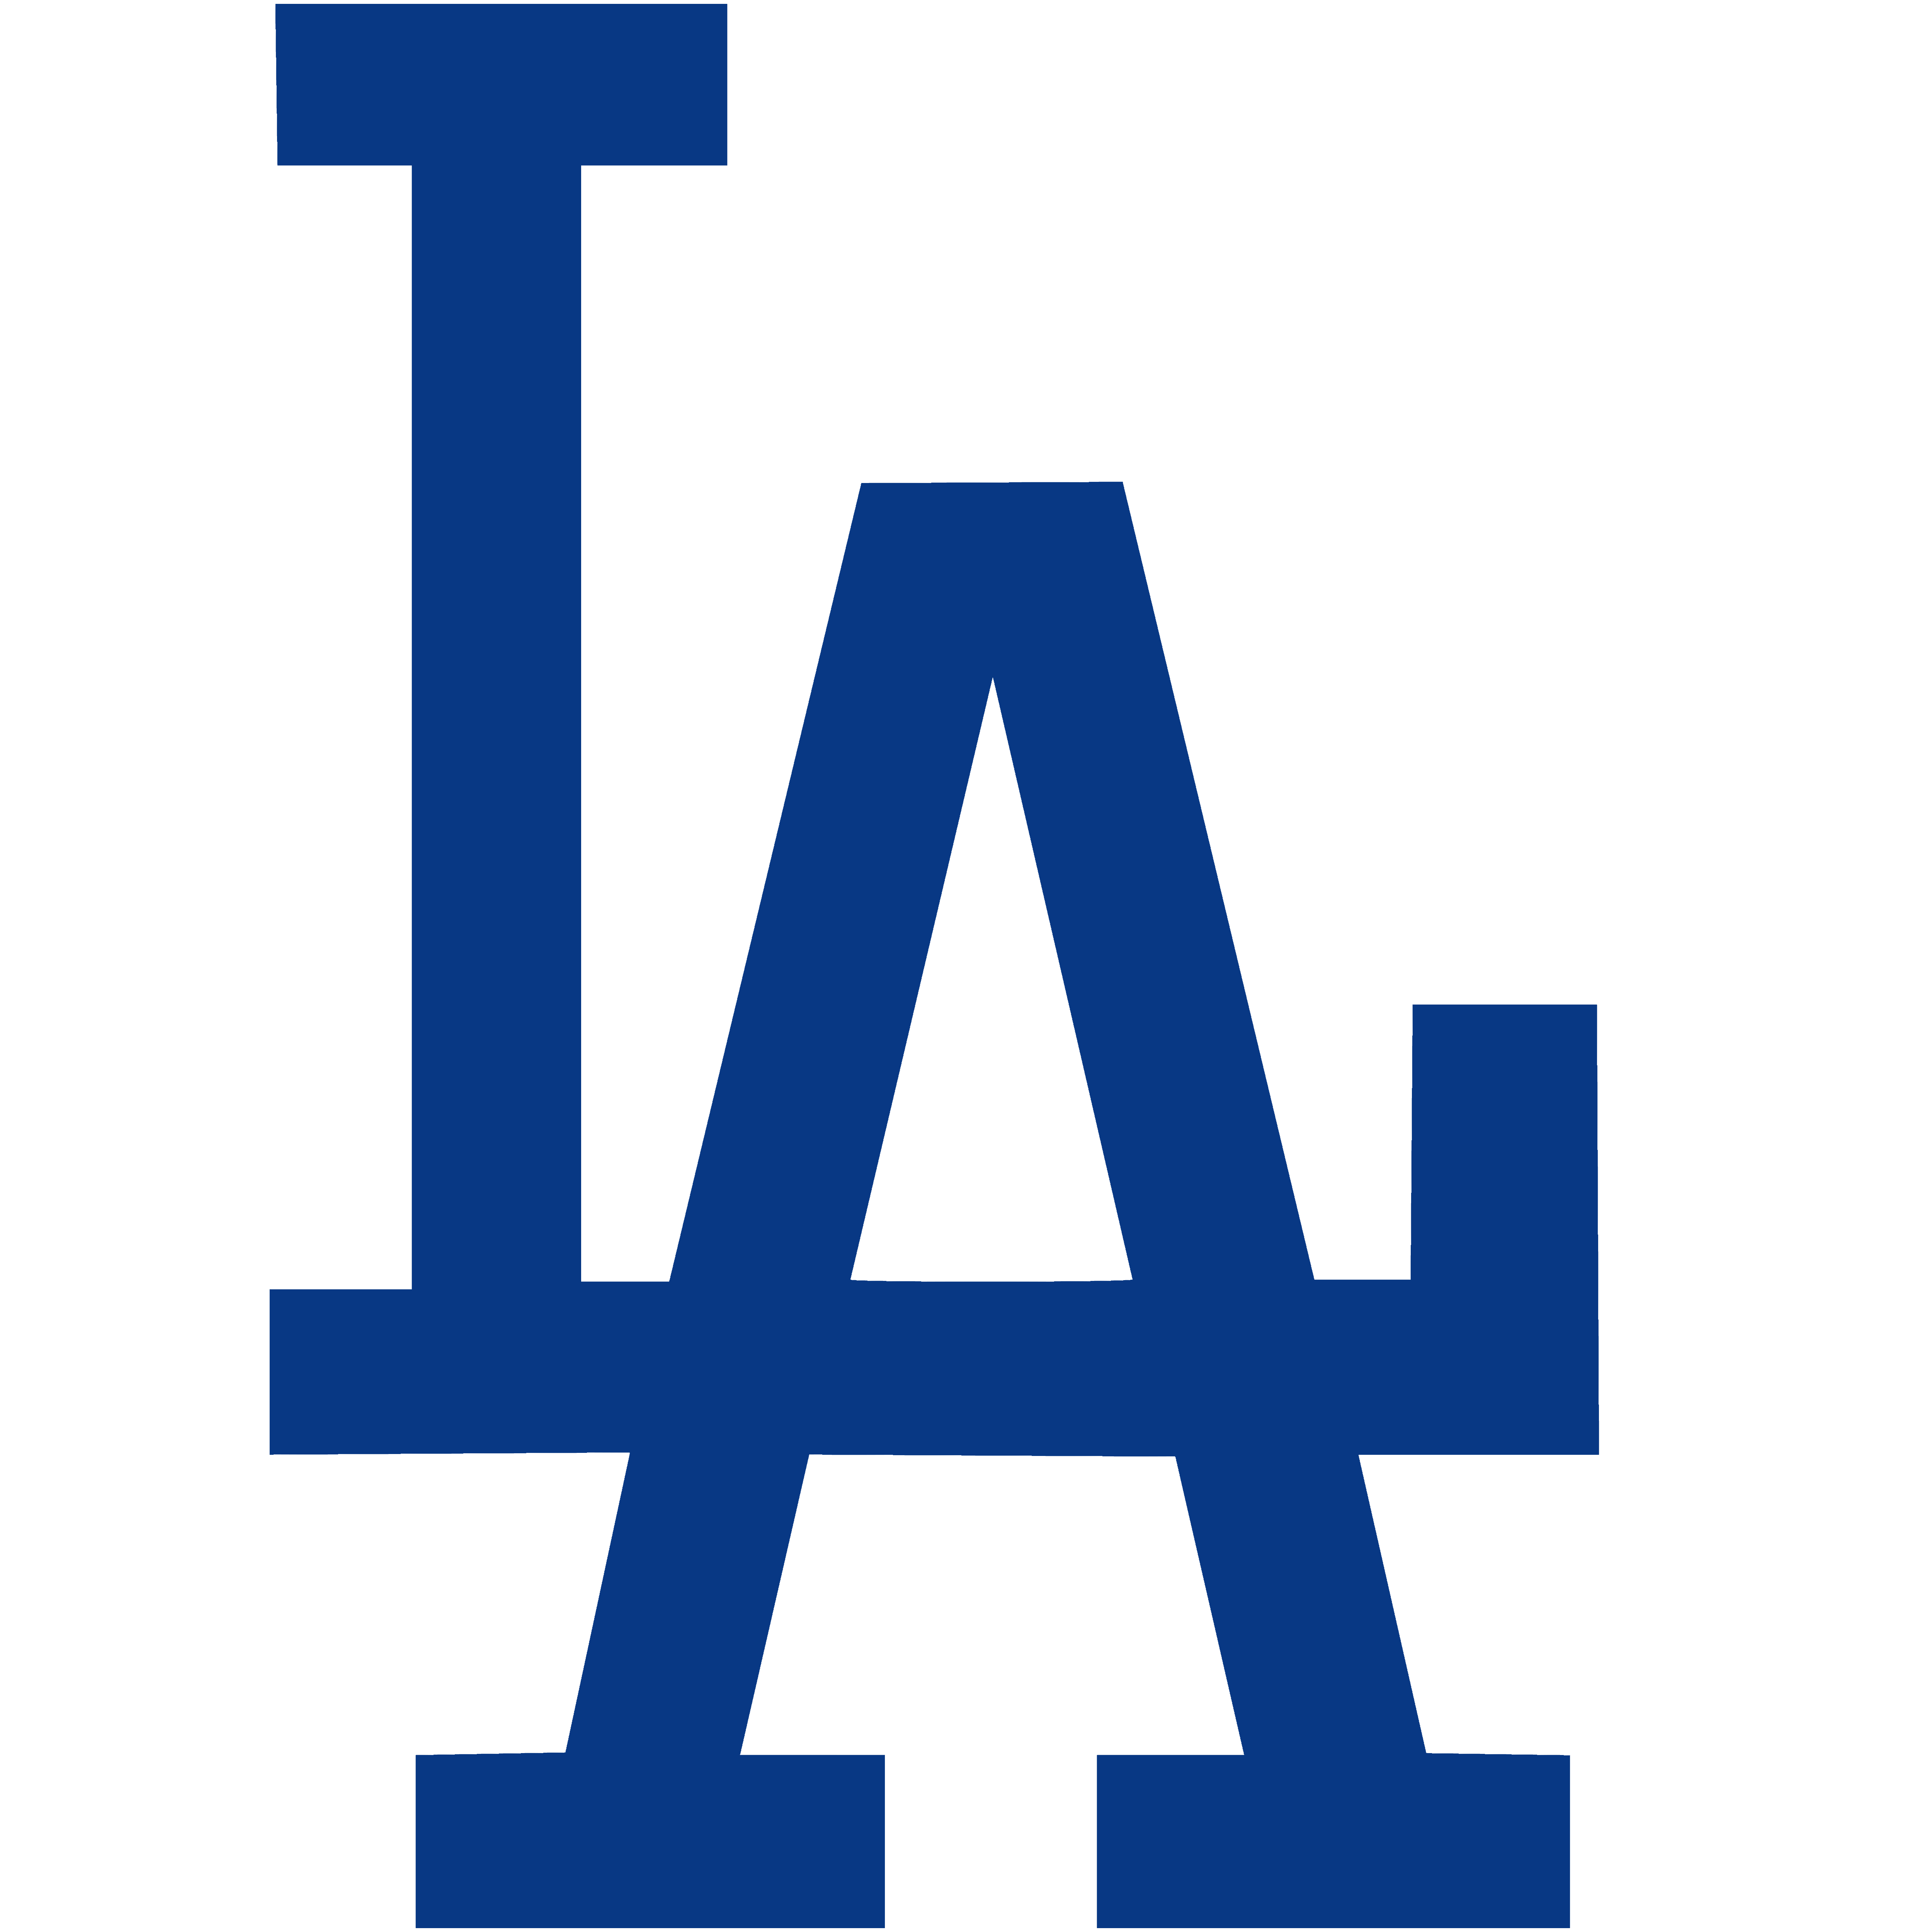 Los Angeles Logo - Los Angeles Dodgers logo, blue (LA) – Logos Download